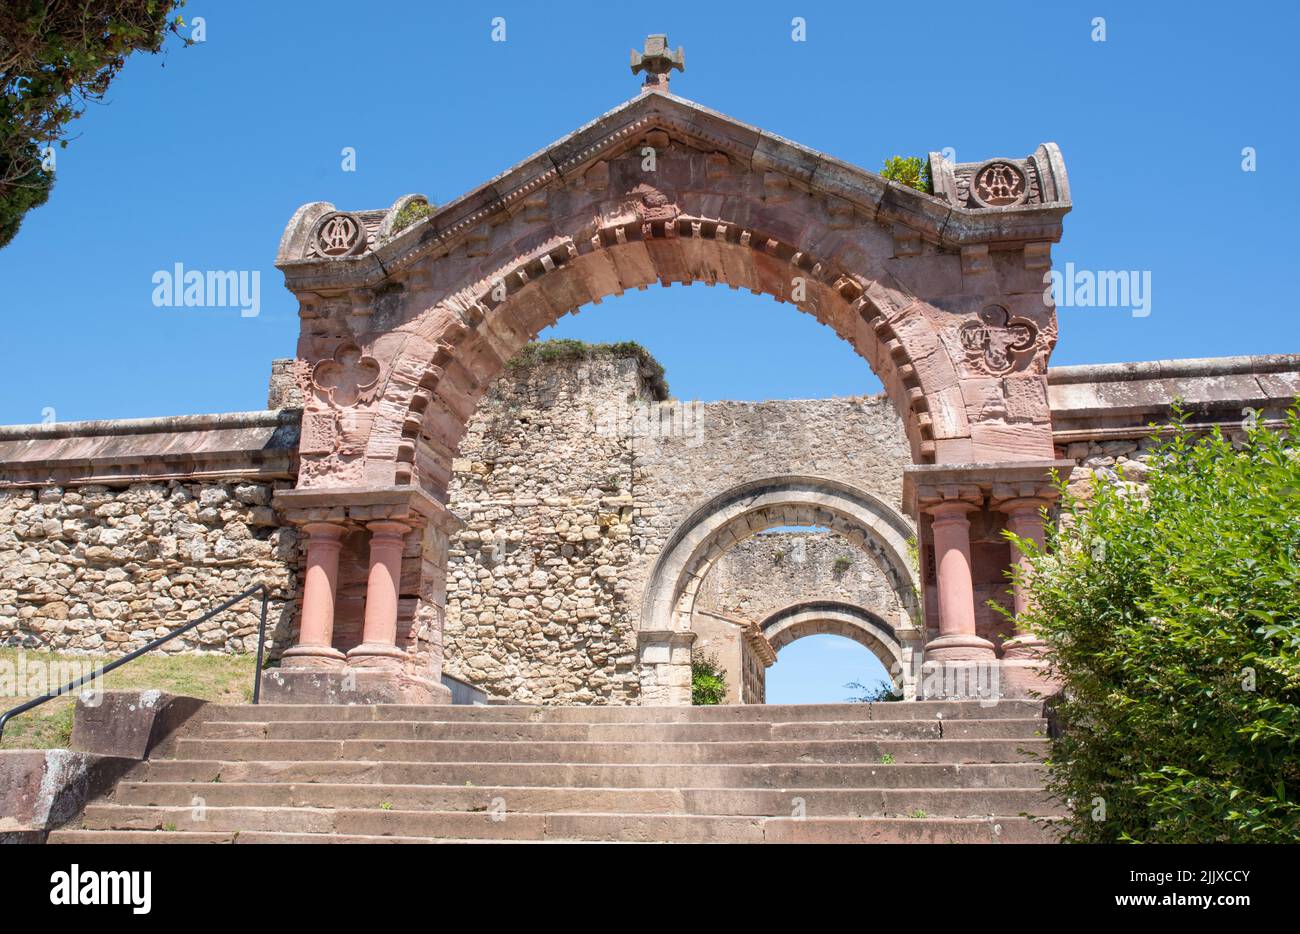 La entrada al cementerio de Comillas, Cantabria Foto de stock